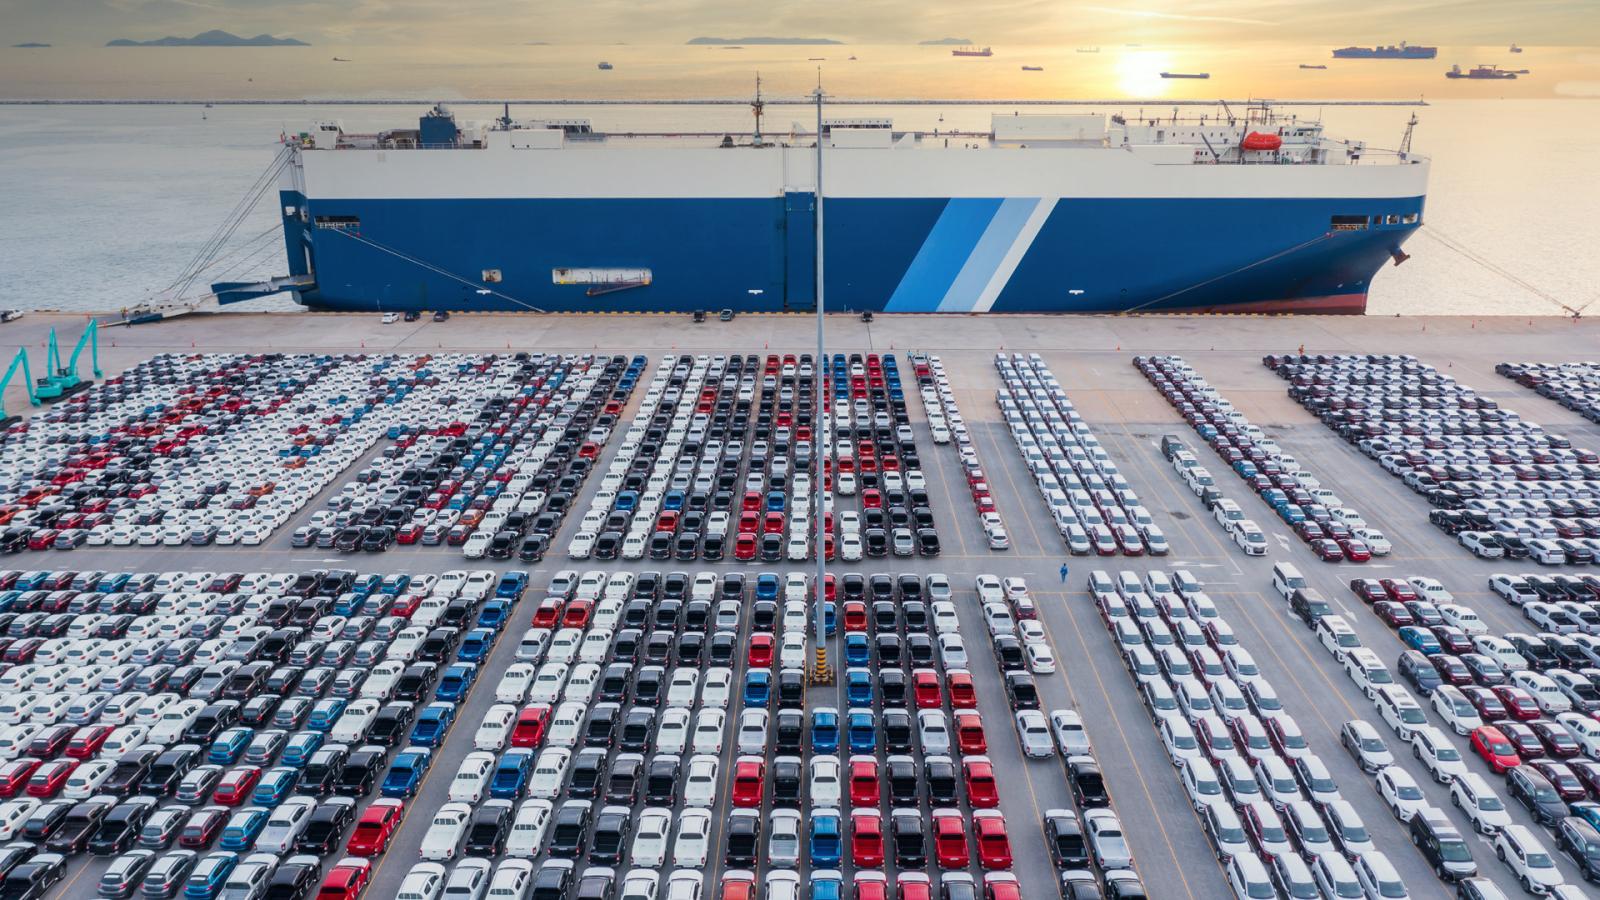 γεμίζουν με αυτοκίνητα τα λιμάνια της ευρώπης –χιλιάδες οχήματα περιμένουν αγοραστή